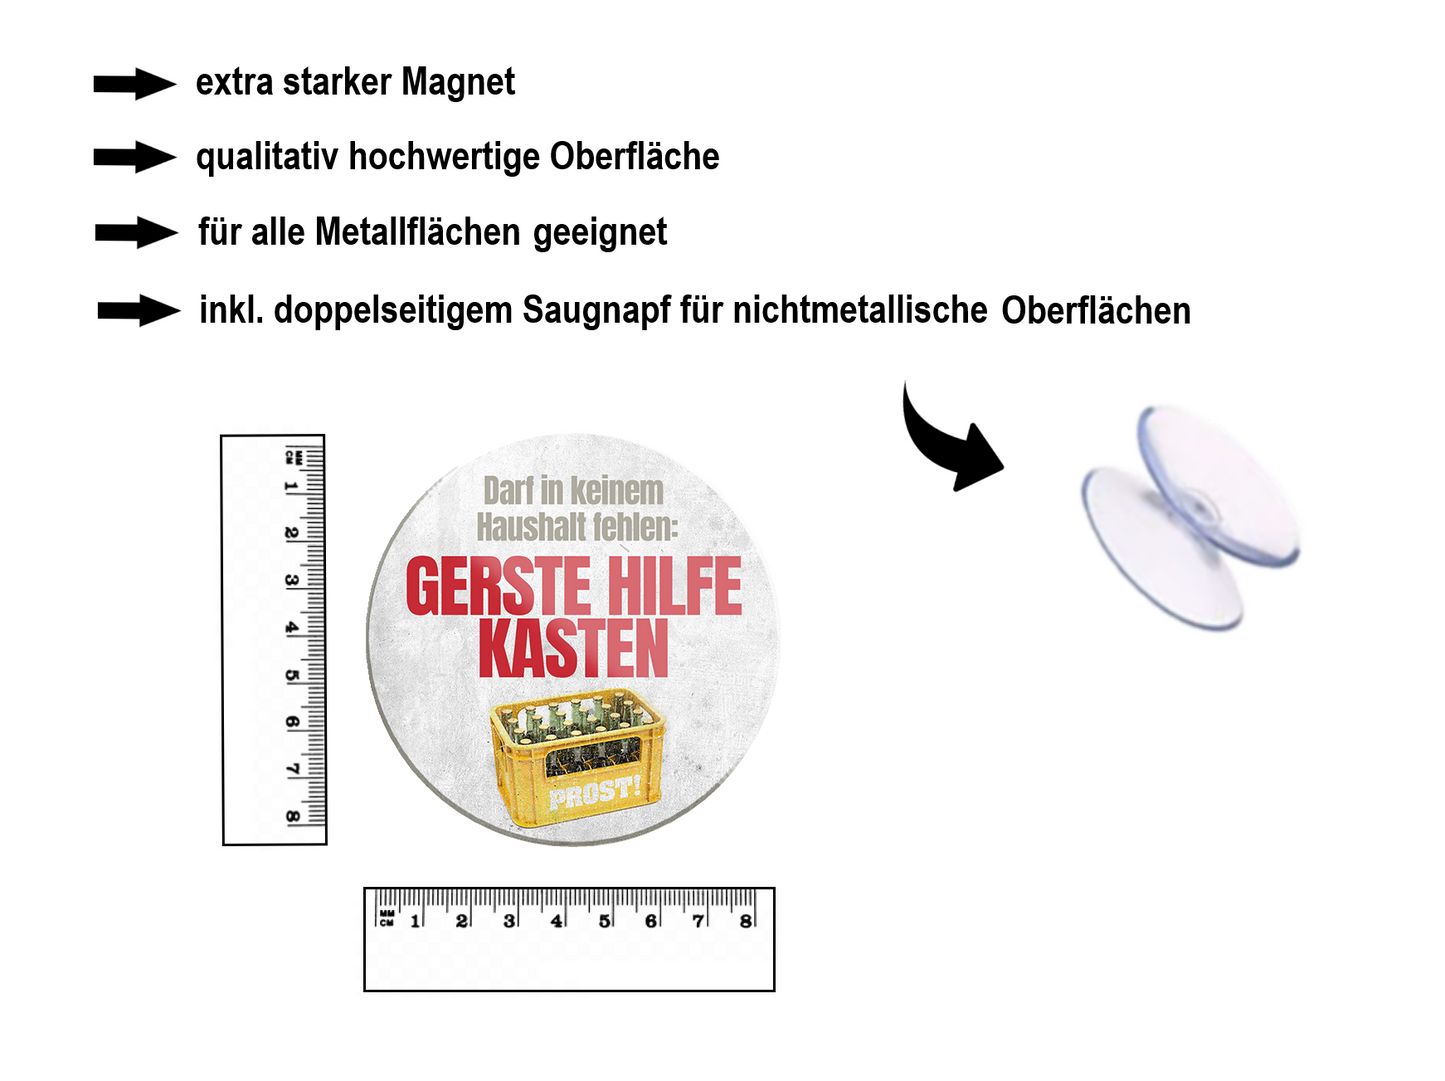 Magnet ''Darf in keinem Haushalt fehlen Gerstehilfekasten (grau)'' 8x8x0,3cm